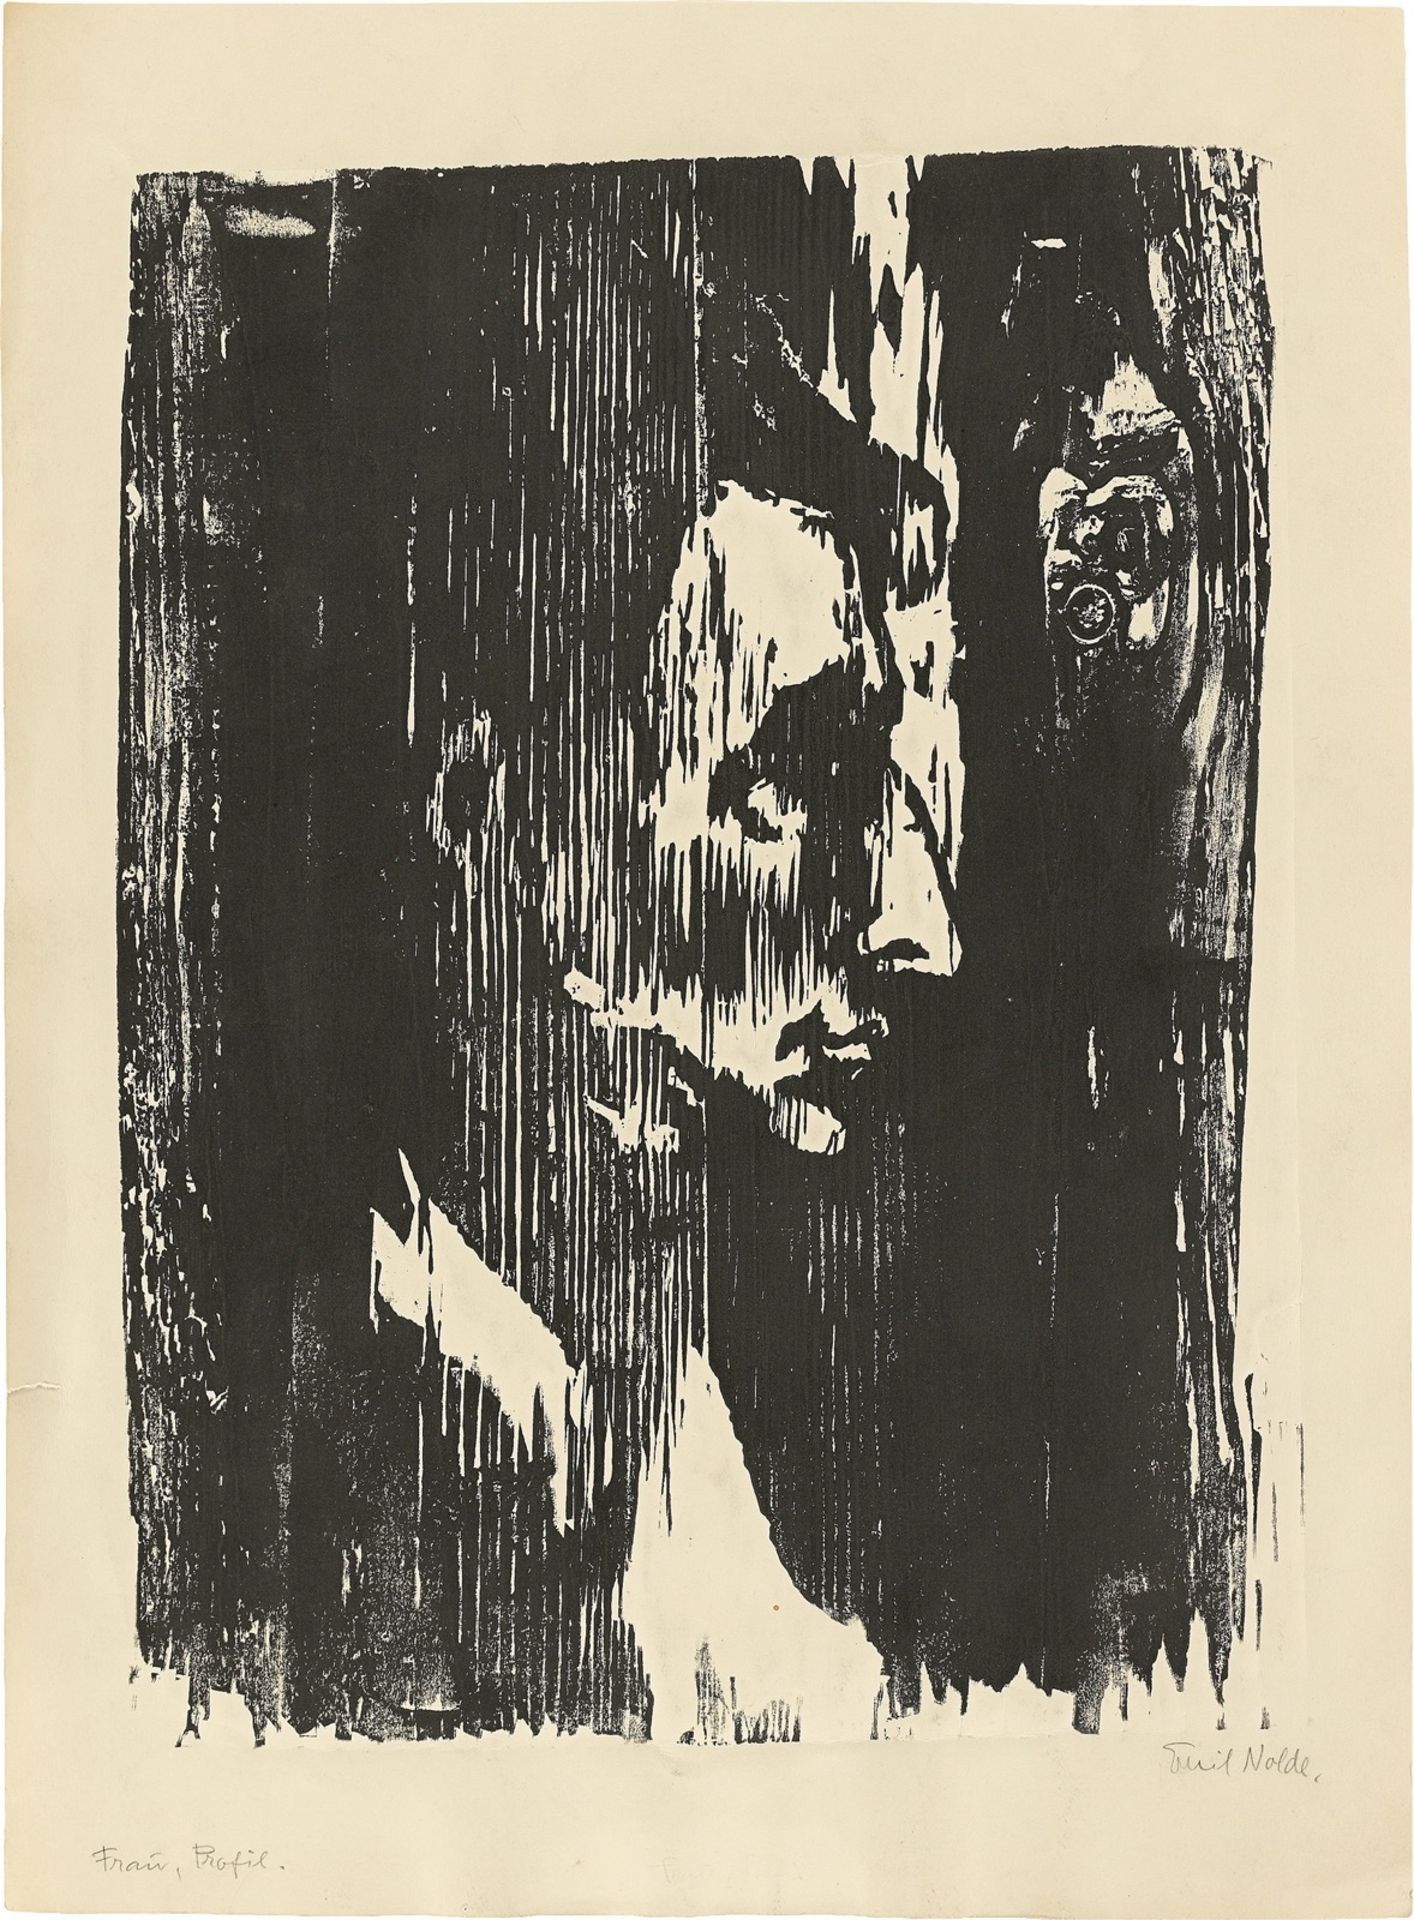 Emil Nolde. ”Frau im Profil”. 1910